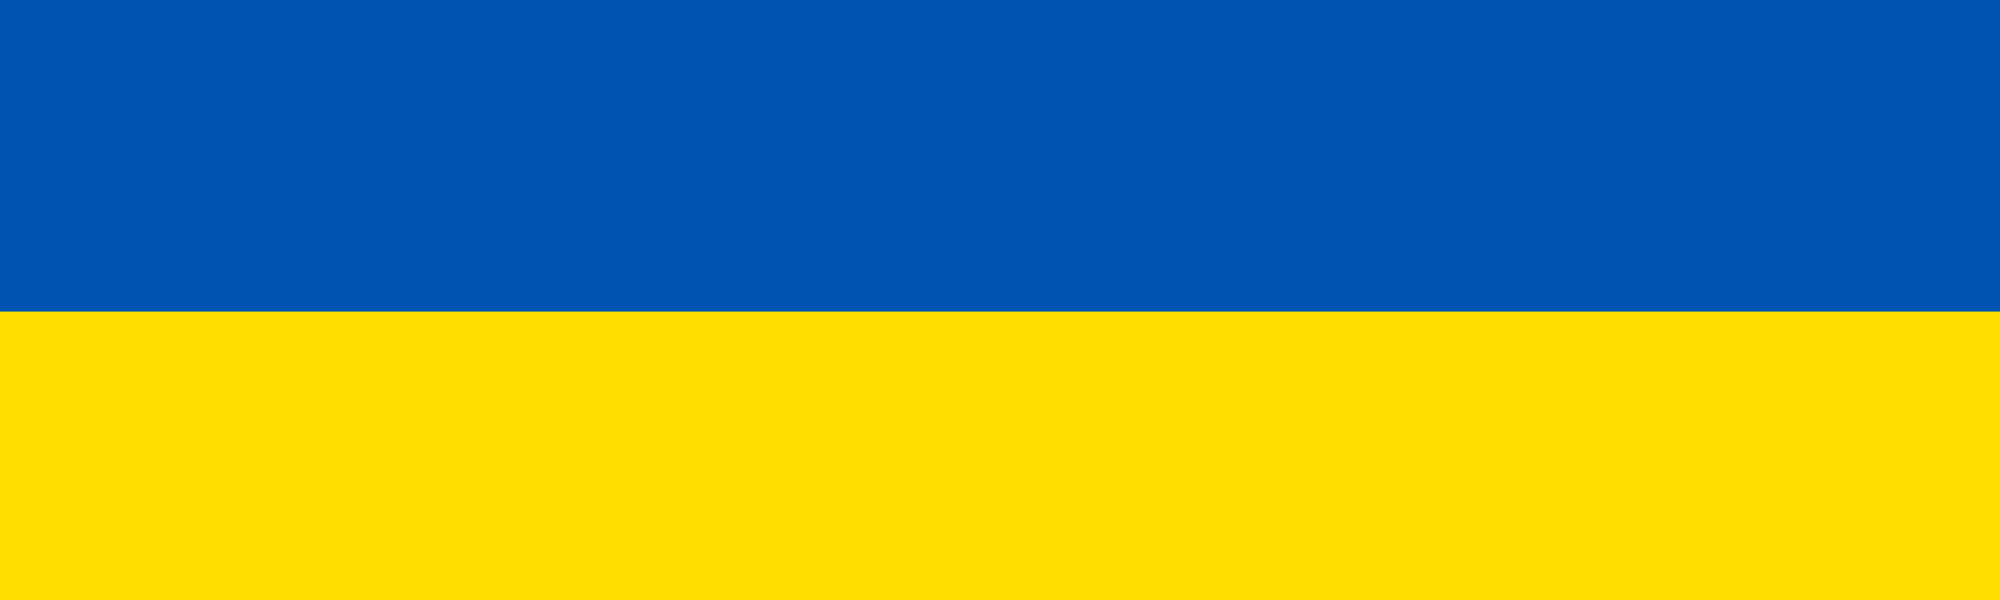 https://www.etbi.ie/wp-content/uploads/2022/03/ukraineflag.jpg